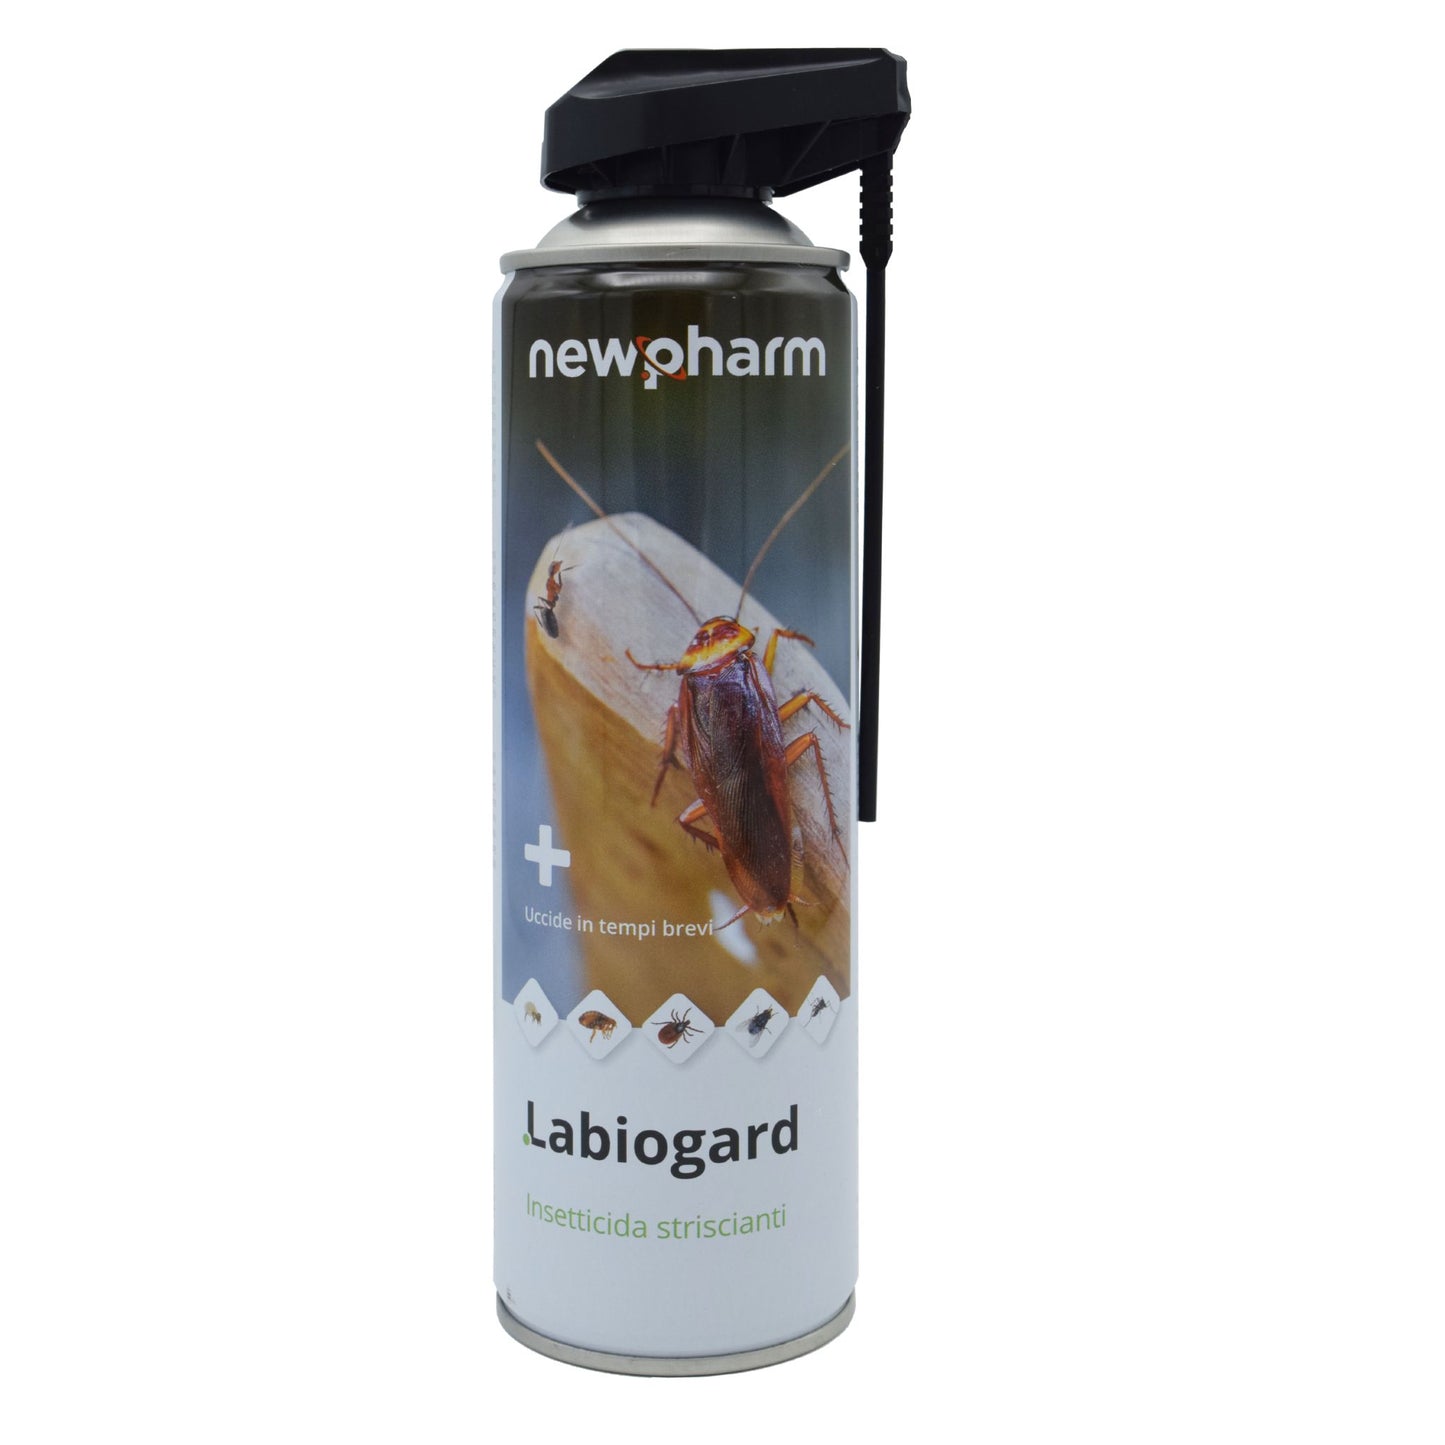 NEWPHARM Labiogard® 500ml